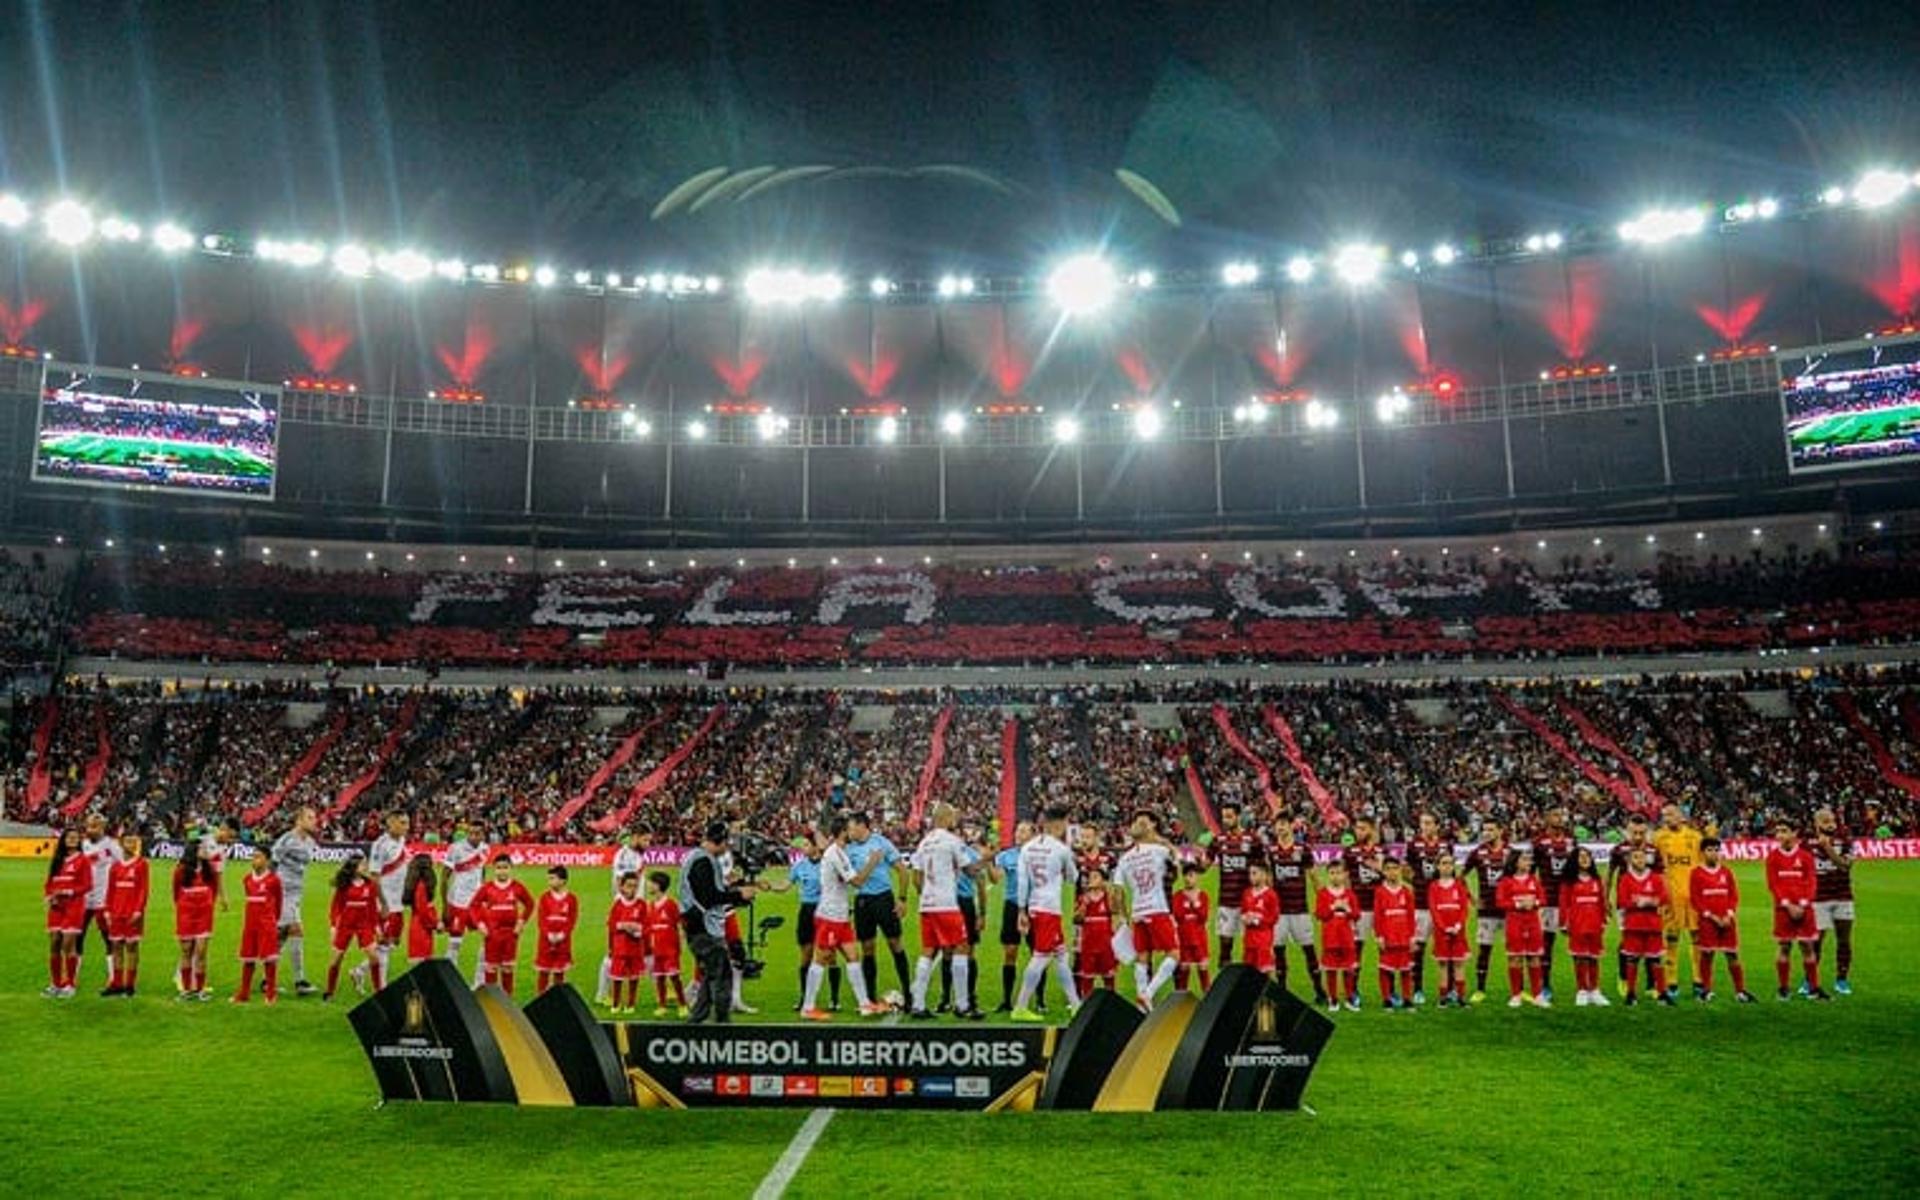 Torcida - Flamengo x Internacional